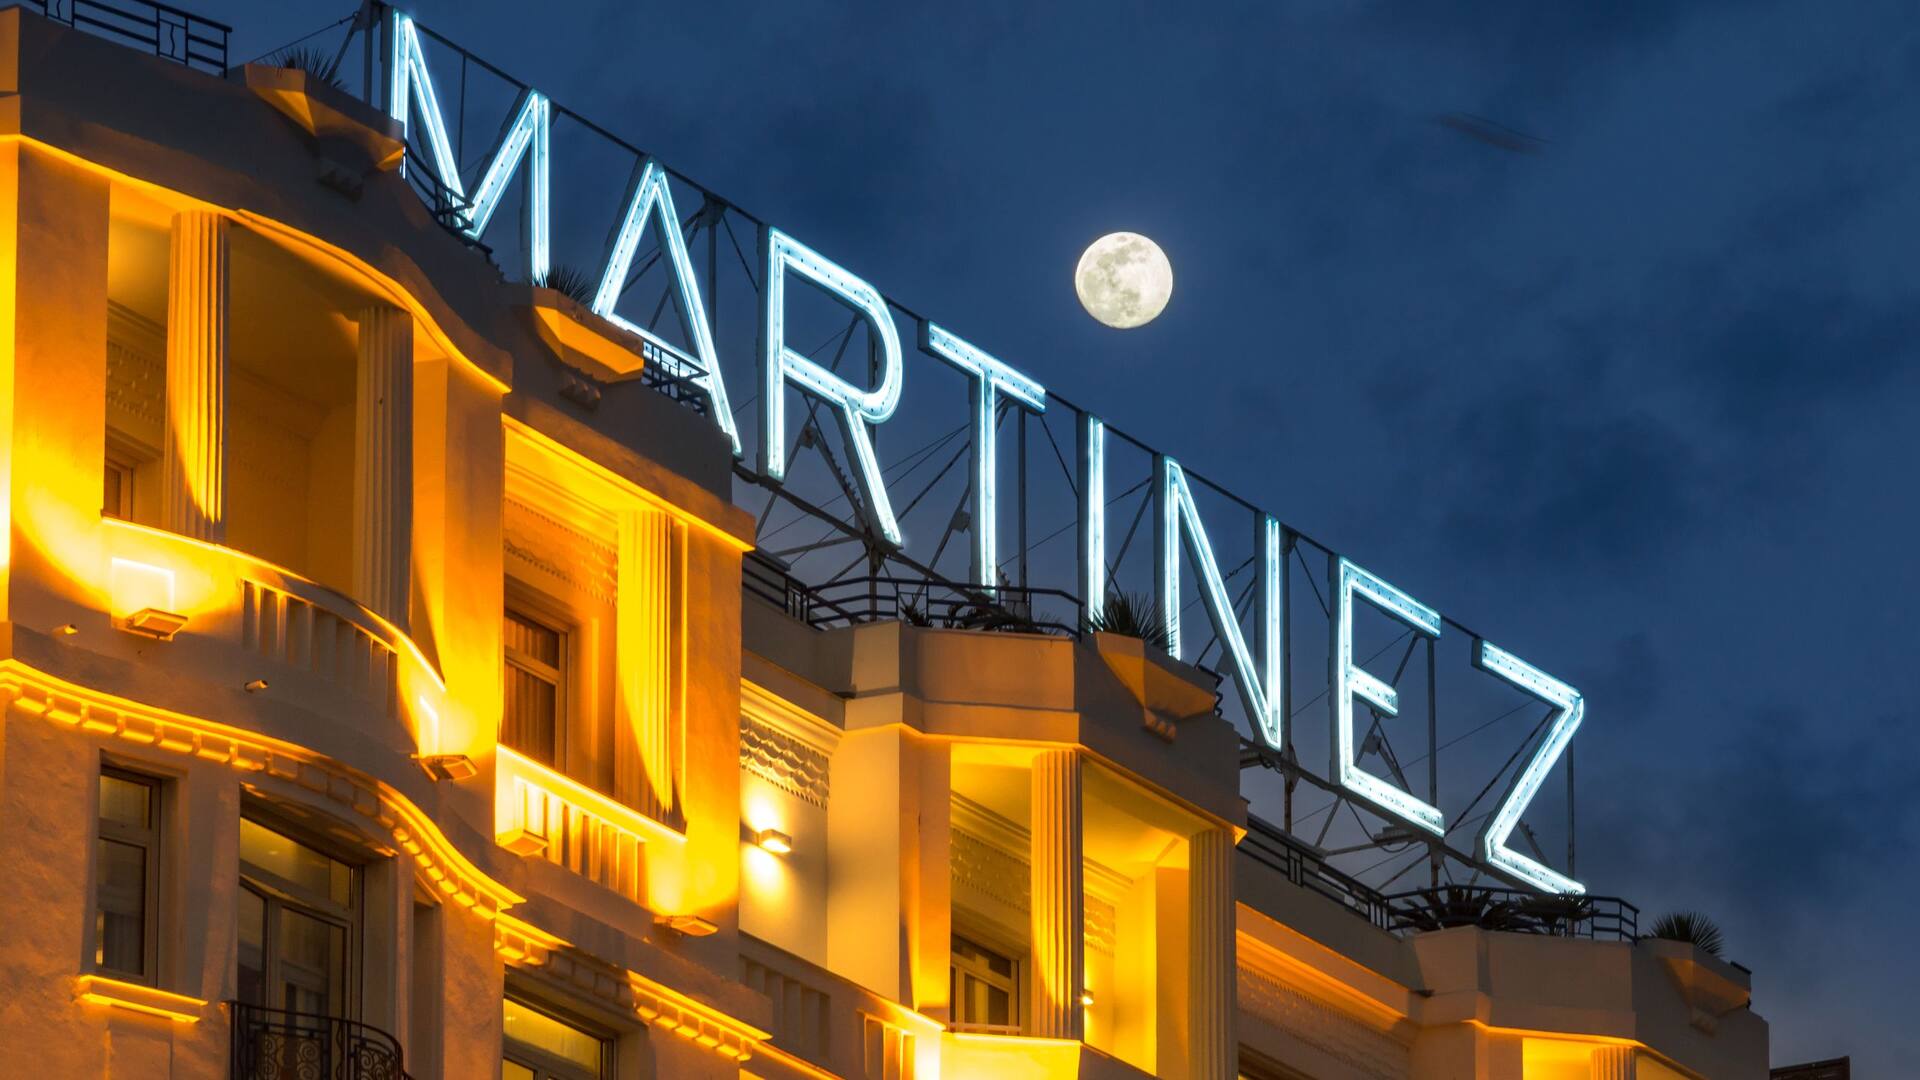 Mariage sur mesure à l'Hôtel Martinez Cannes by Hyatt